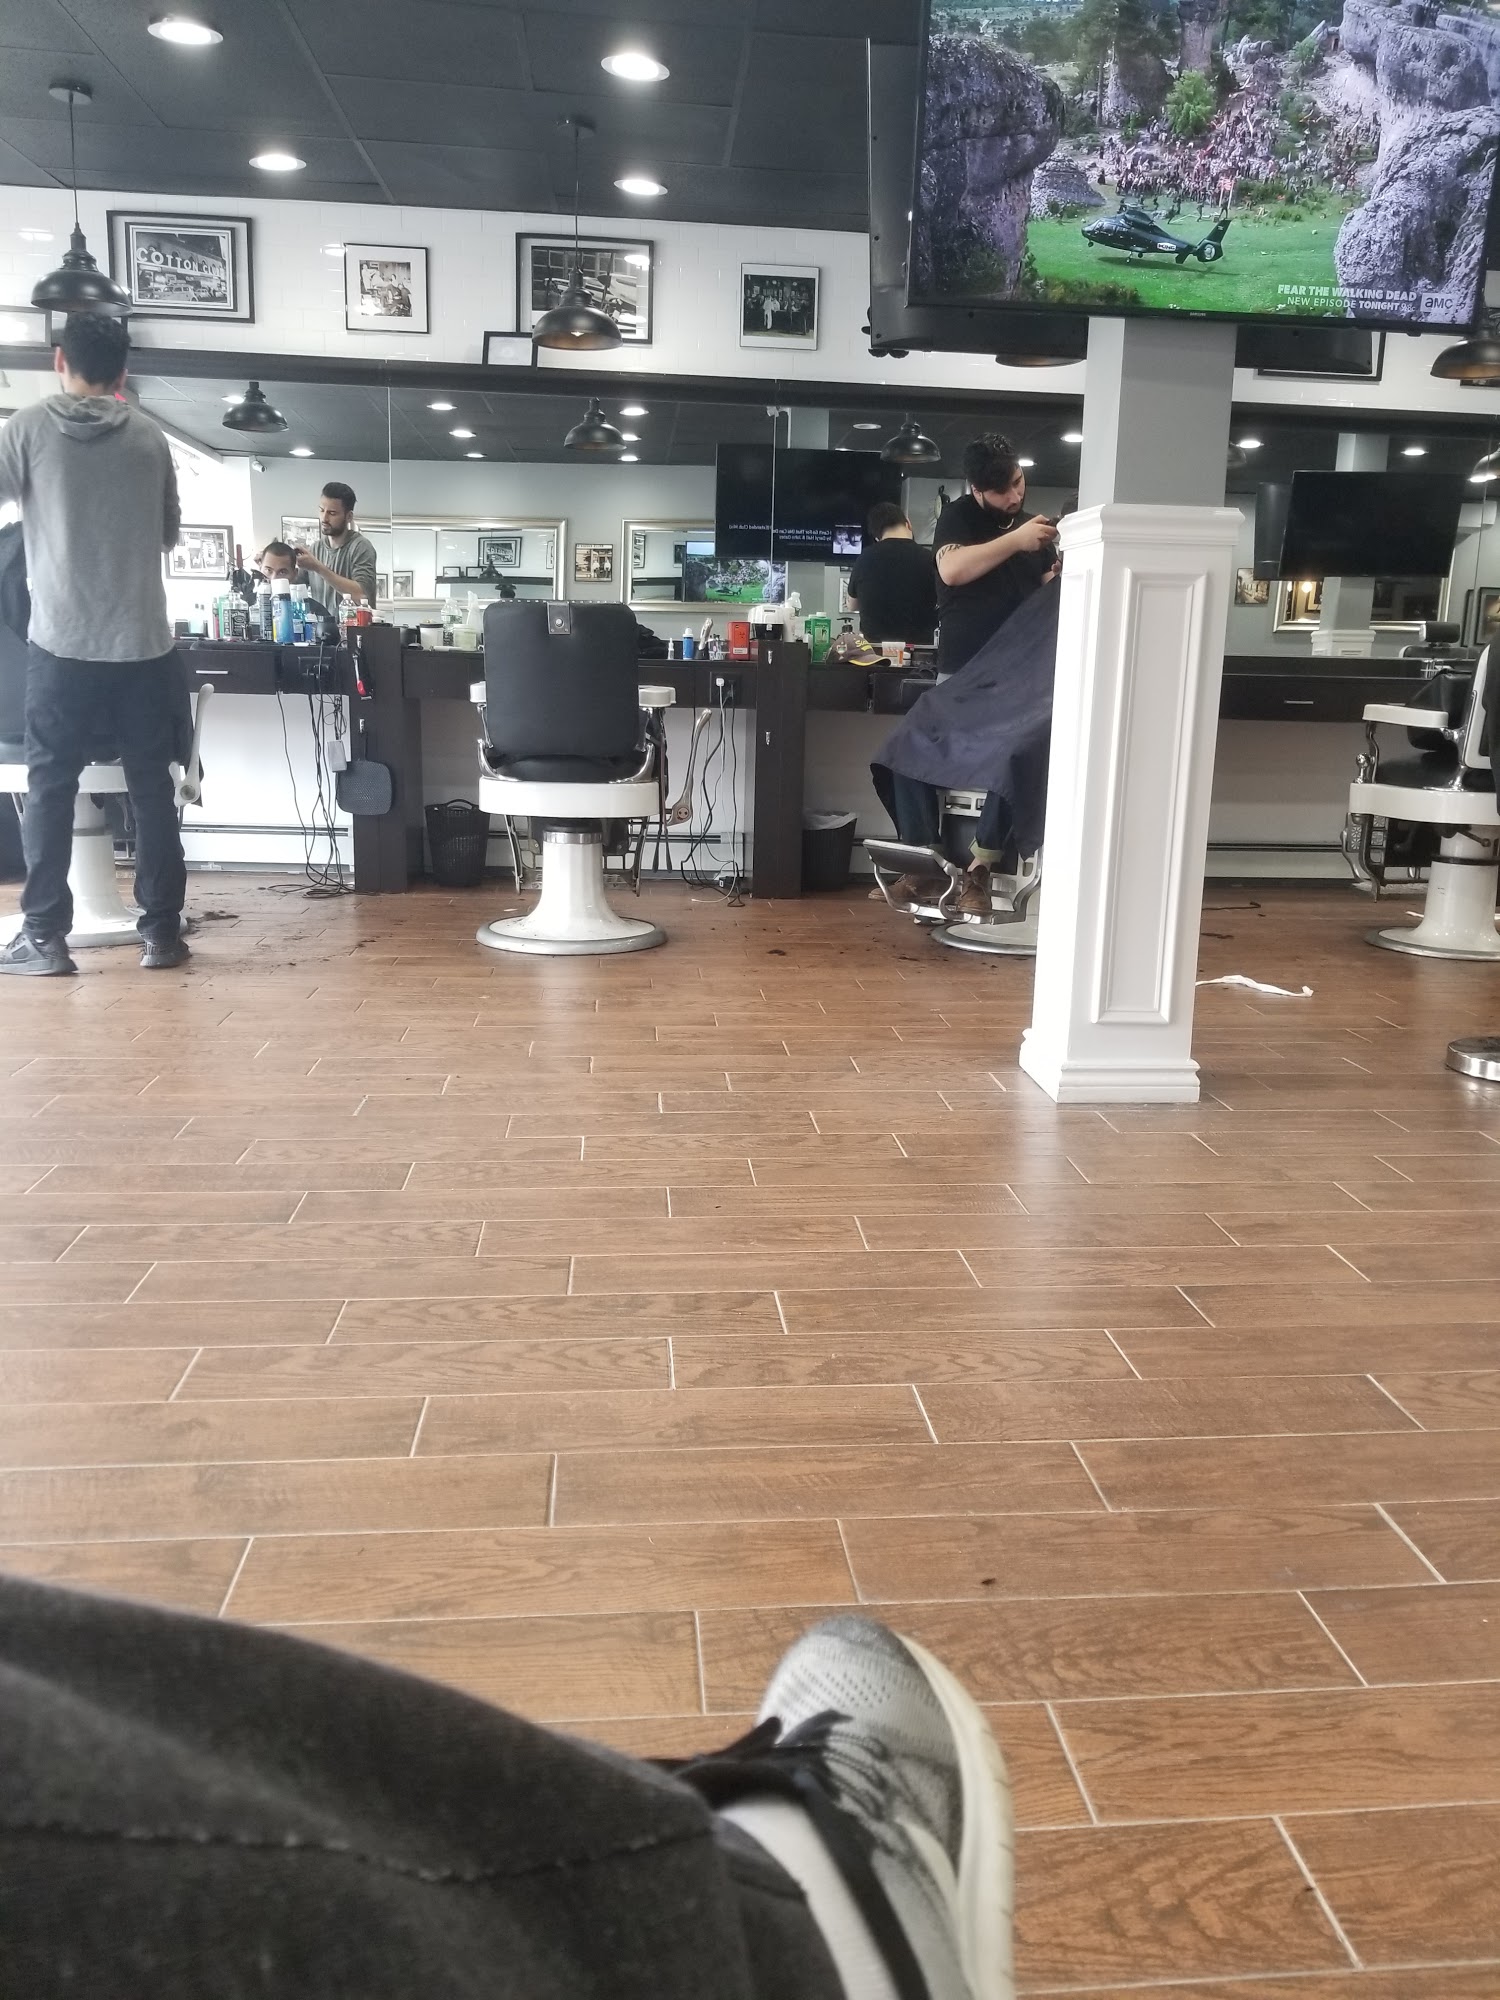 Gentlemens Den Barbershop